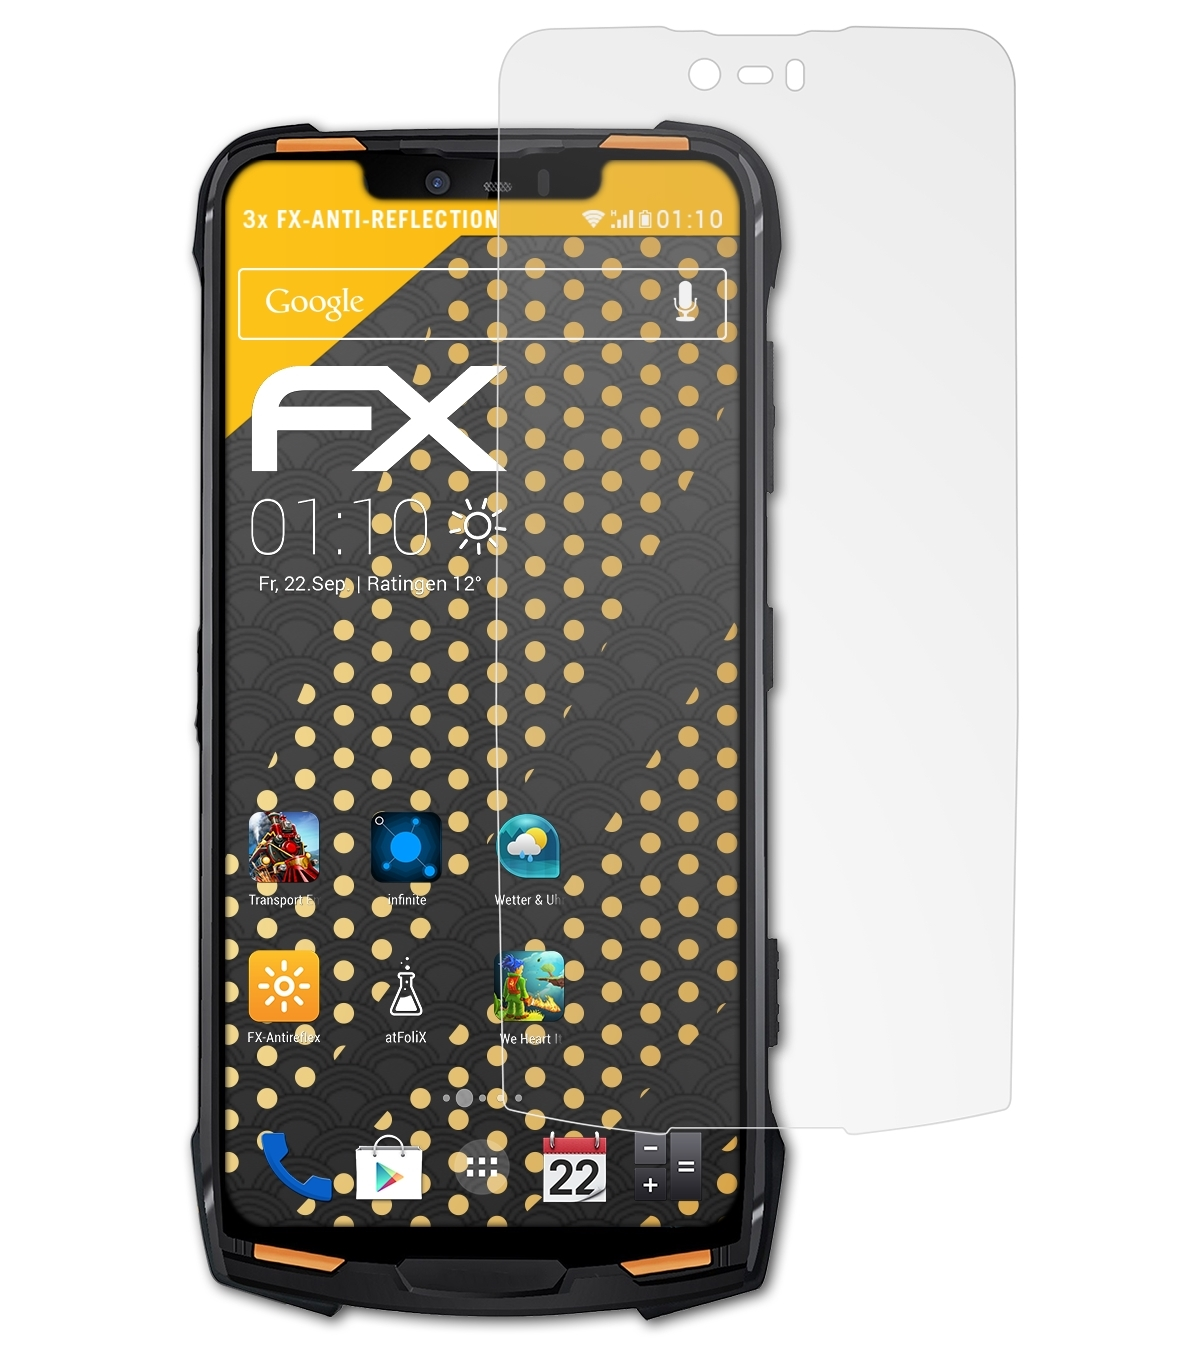 ATFOLIX Displayschutz(für Pro) Doogee 3x S90 FX-Antireflex